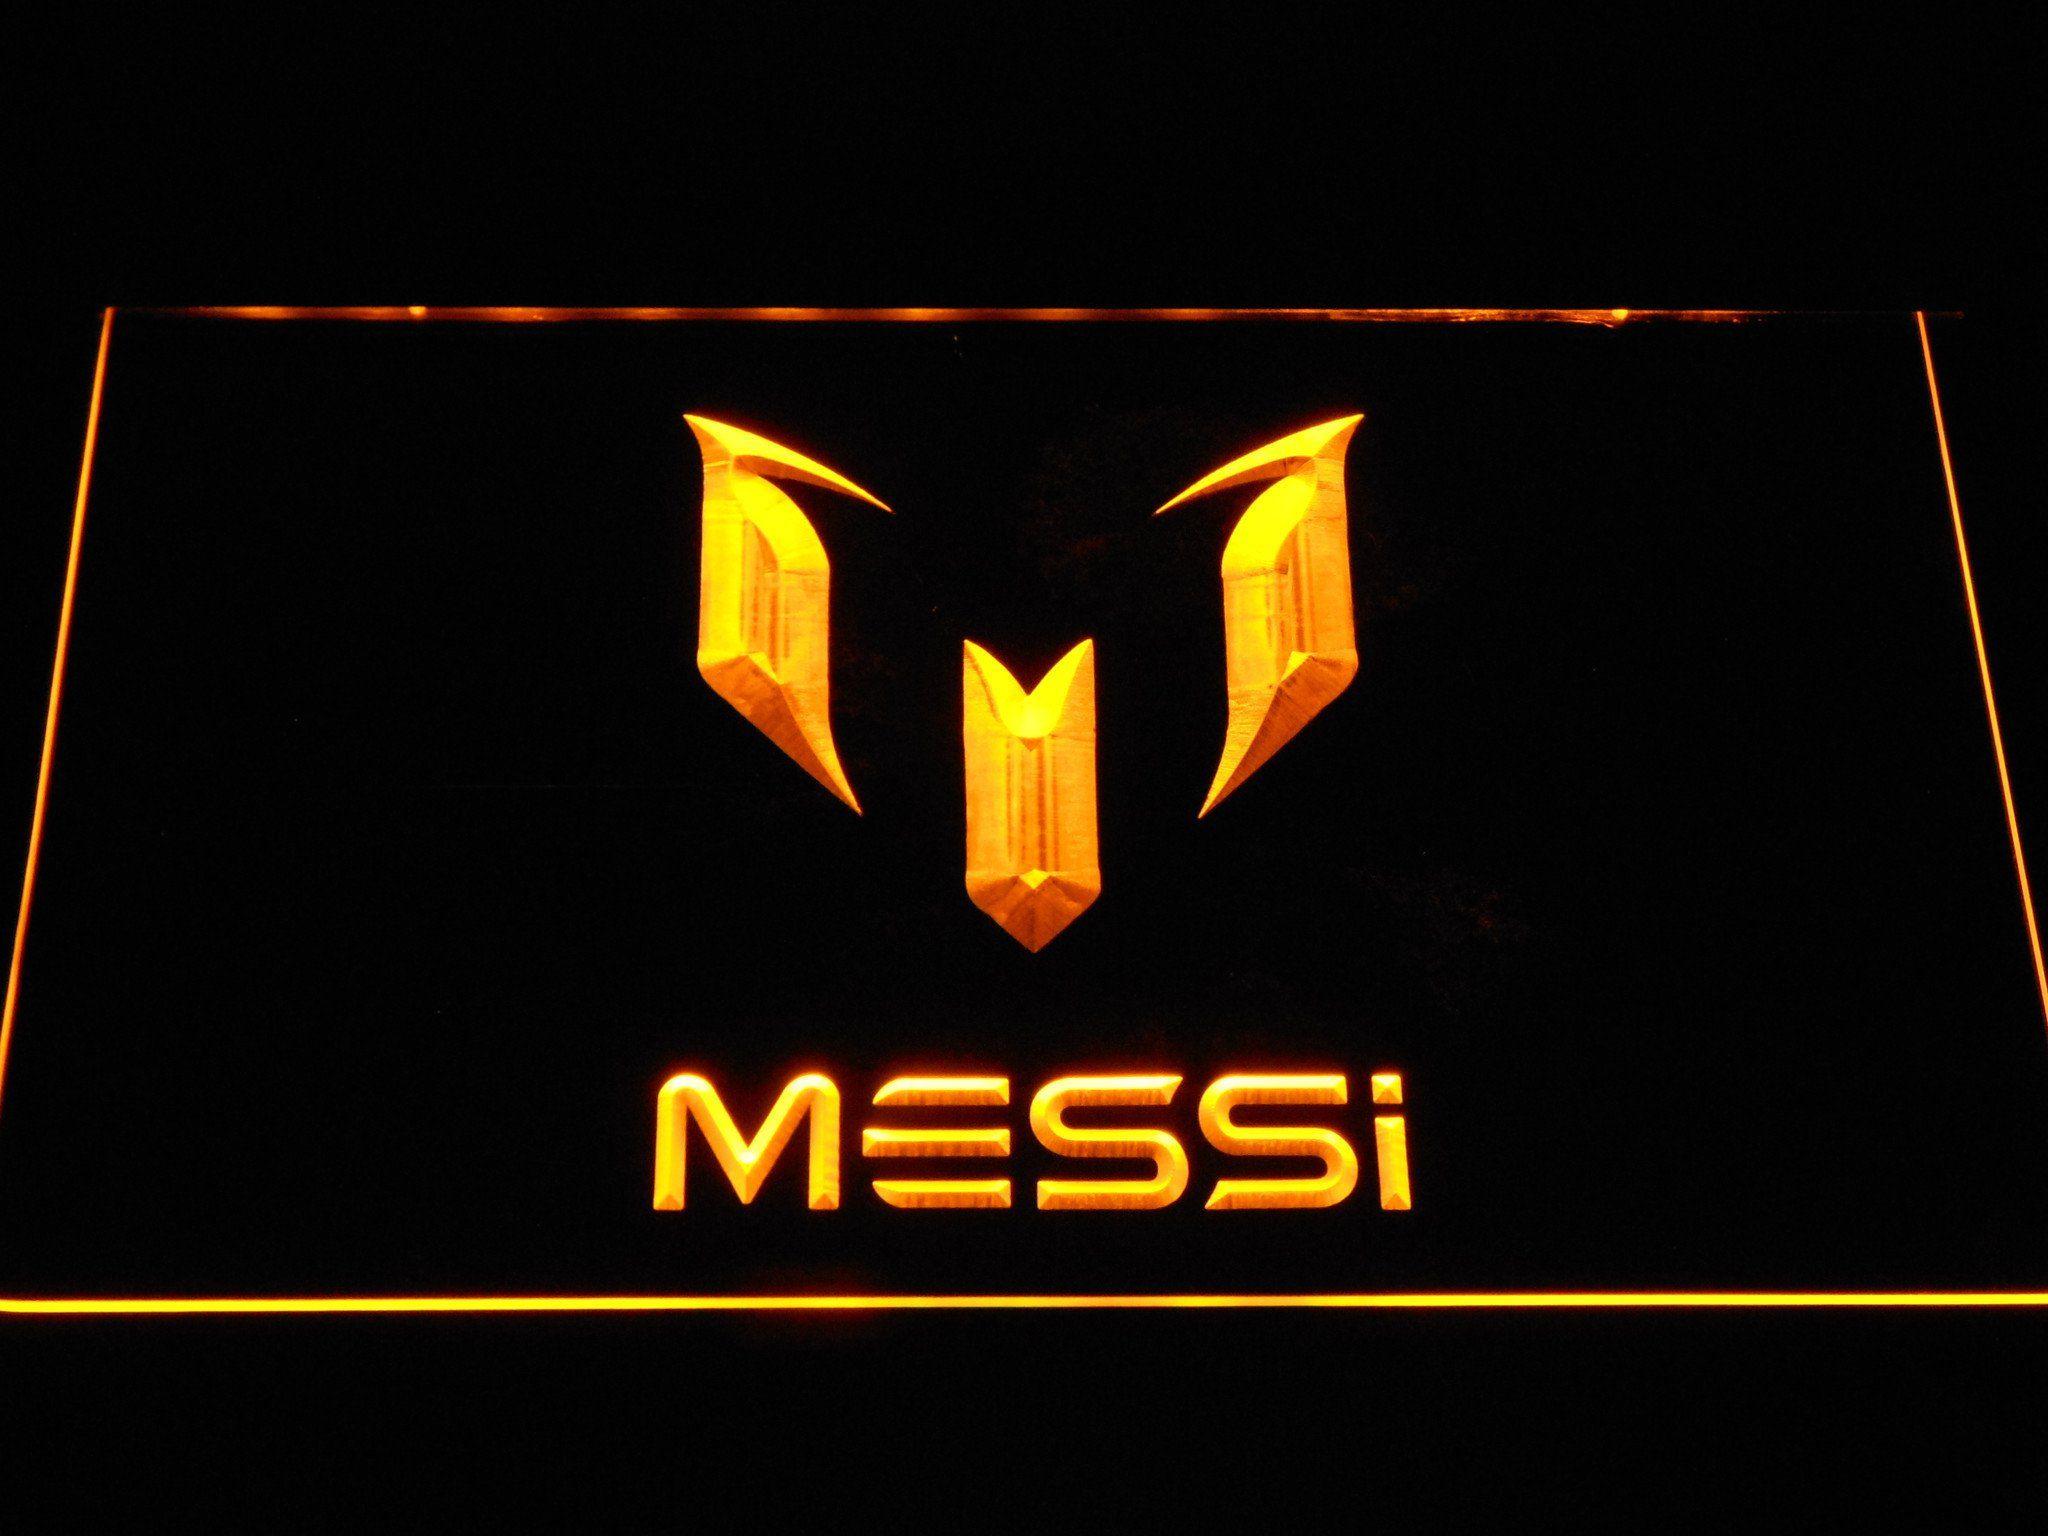 Barcilona Logo - FC Barcelona Lionel Messi Logo LED Neon Sign